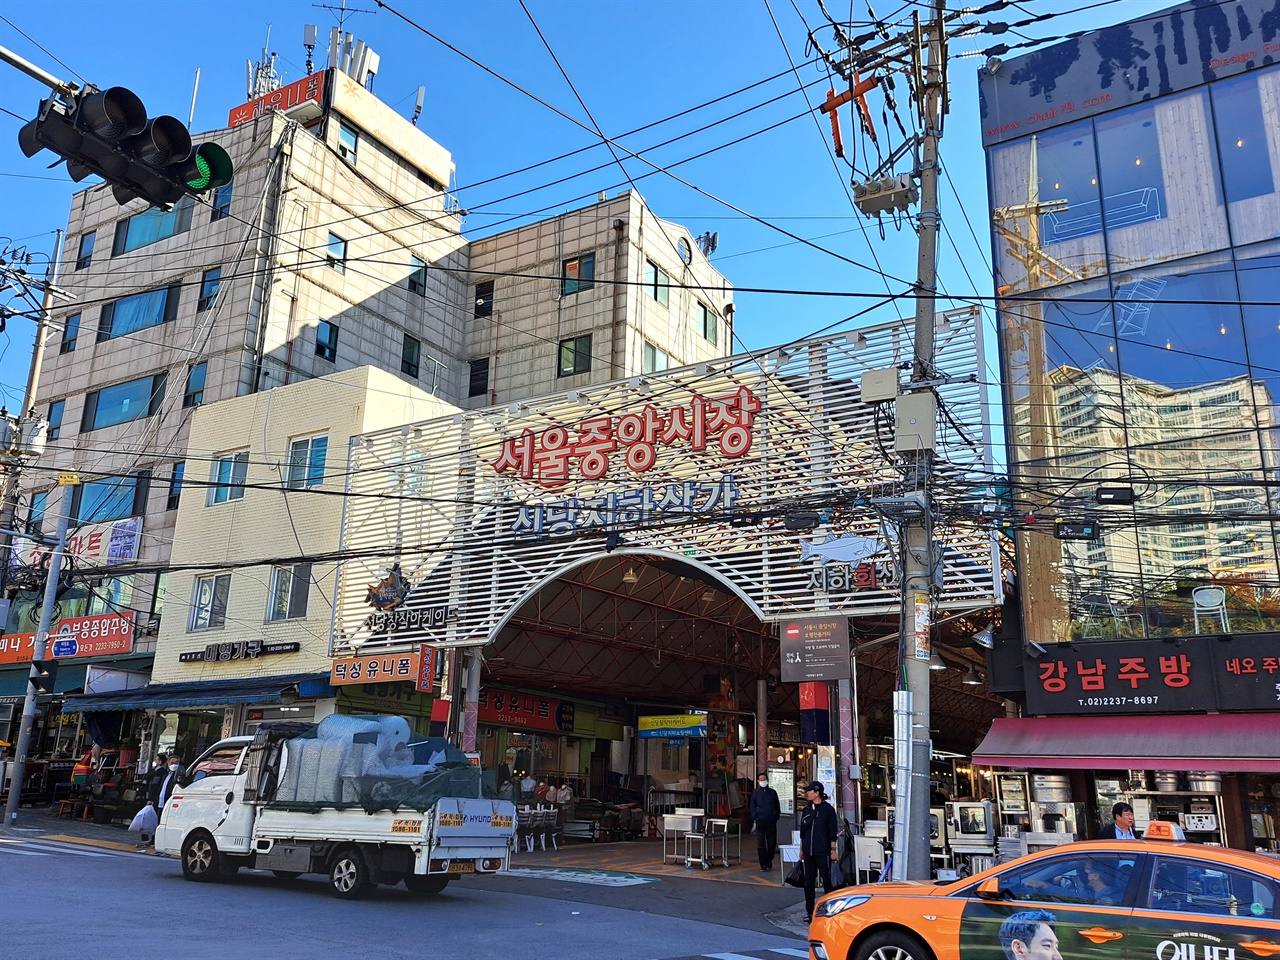 황학동 공간구조의 중심을 이루는 서울중앙시장 북측 입구 모습. 길 건너가 주방거리 및 중고시장 자리임.